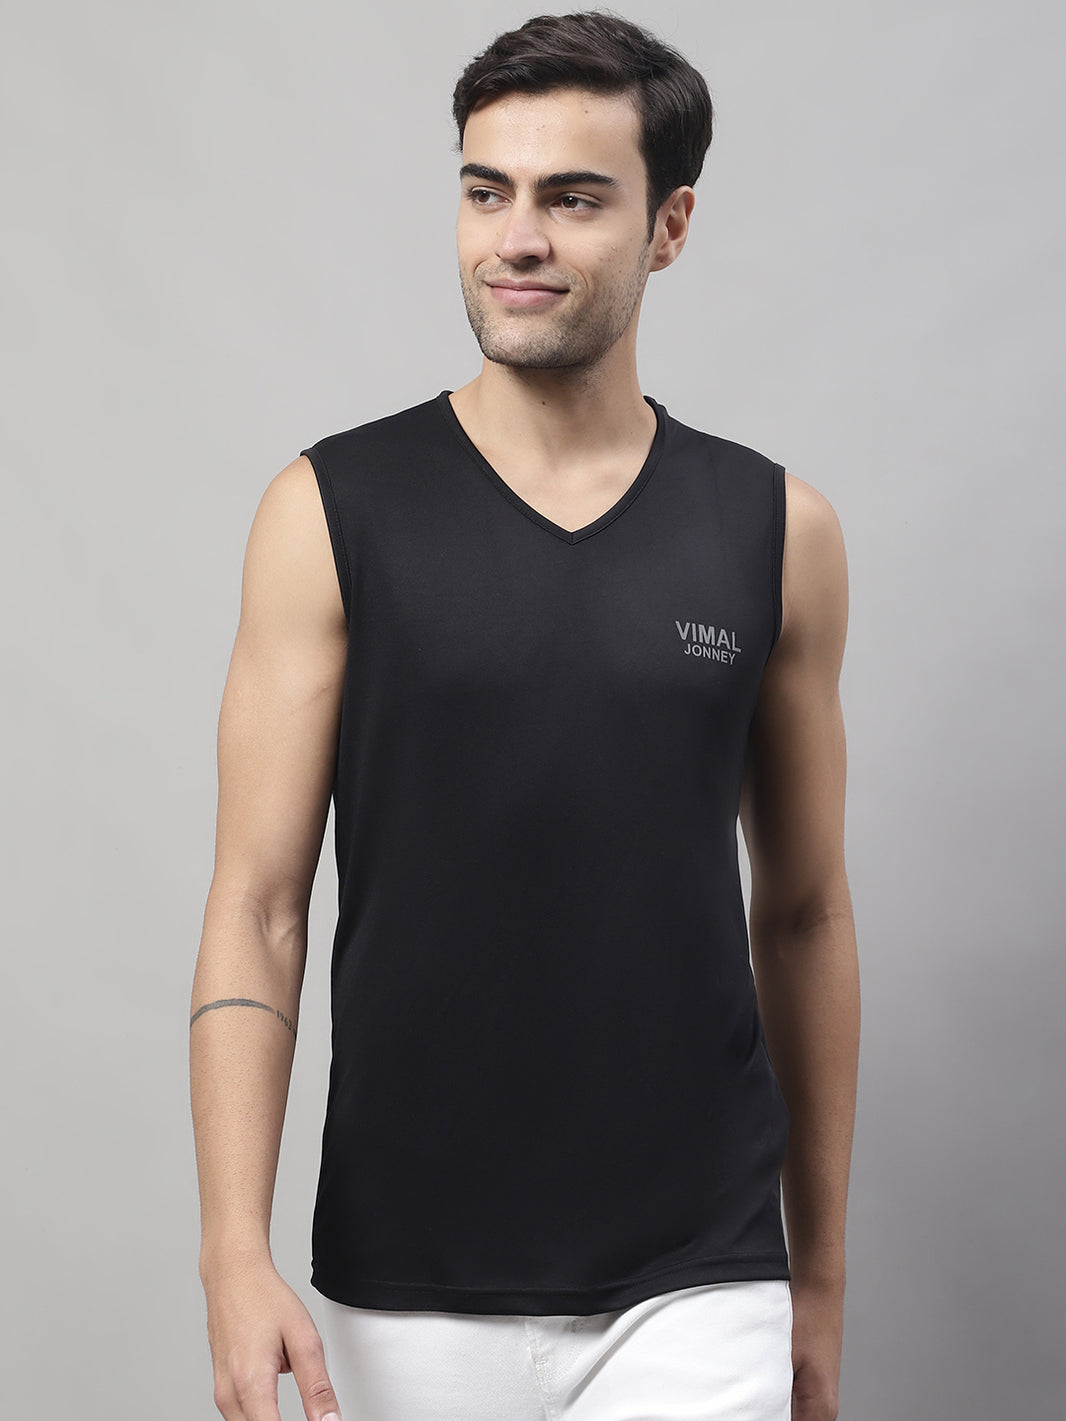 Vimal Jonney Regular Fit Dryfit Lycra Solid Black Gym Vest for Men